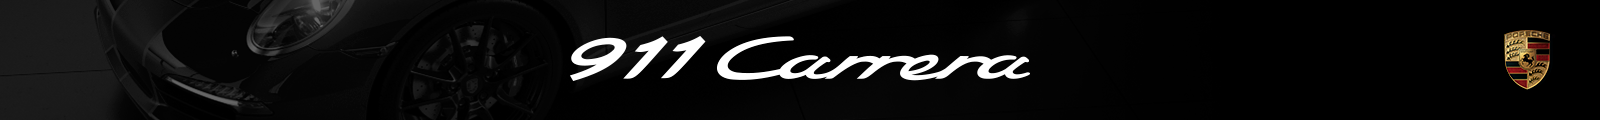 Porsche 911 Carrera on Behance38118592626035.5e4fb95300ce2.png